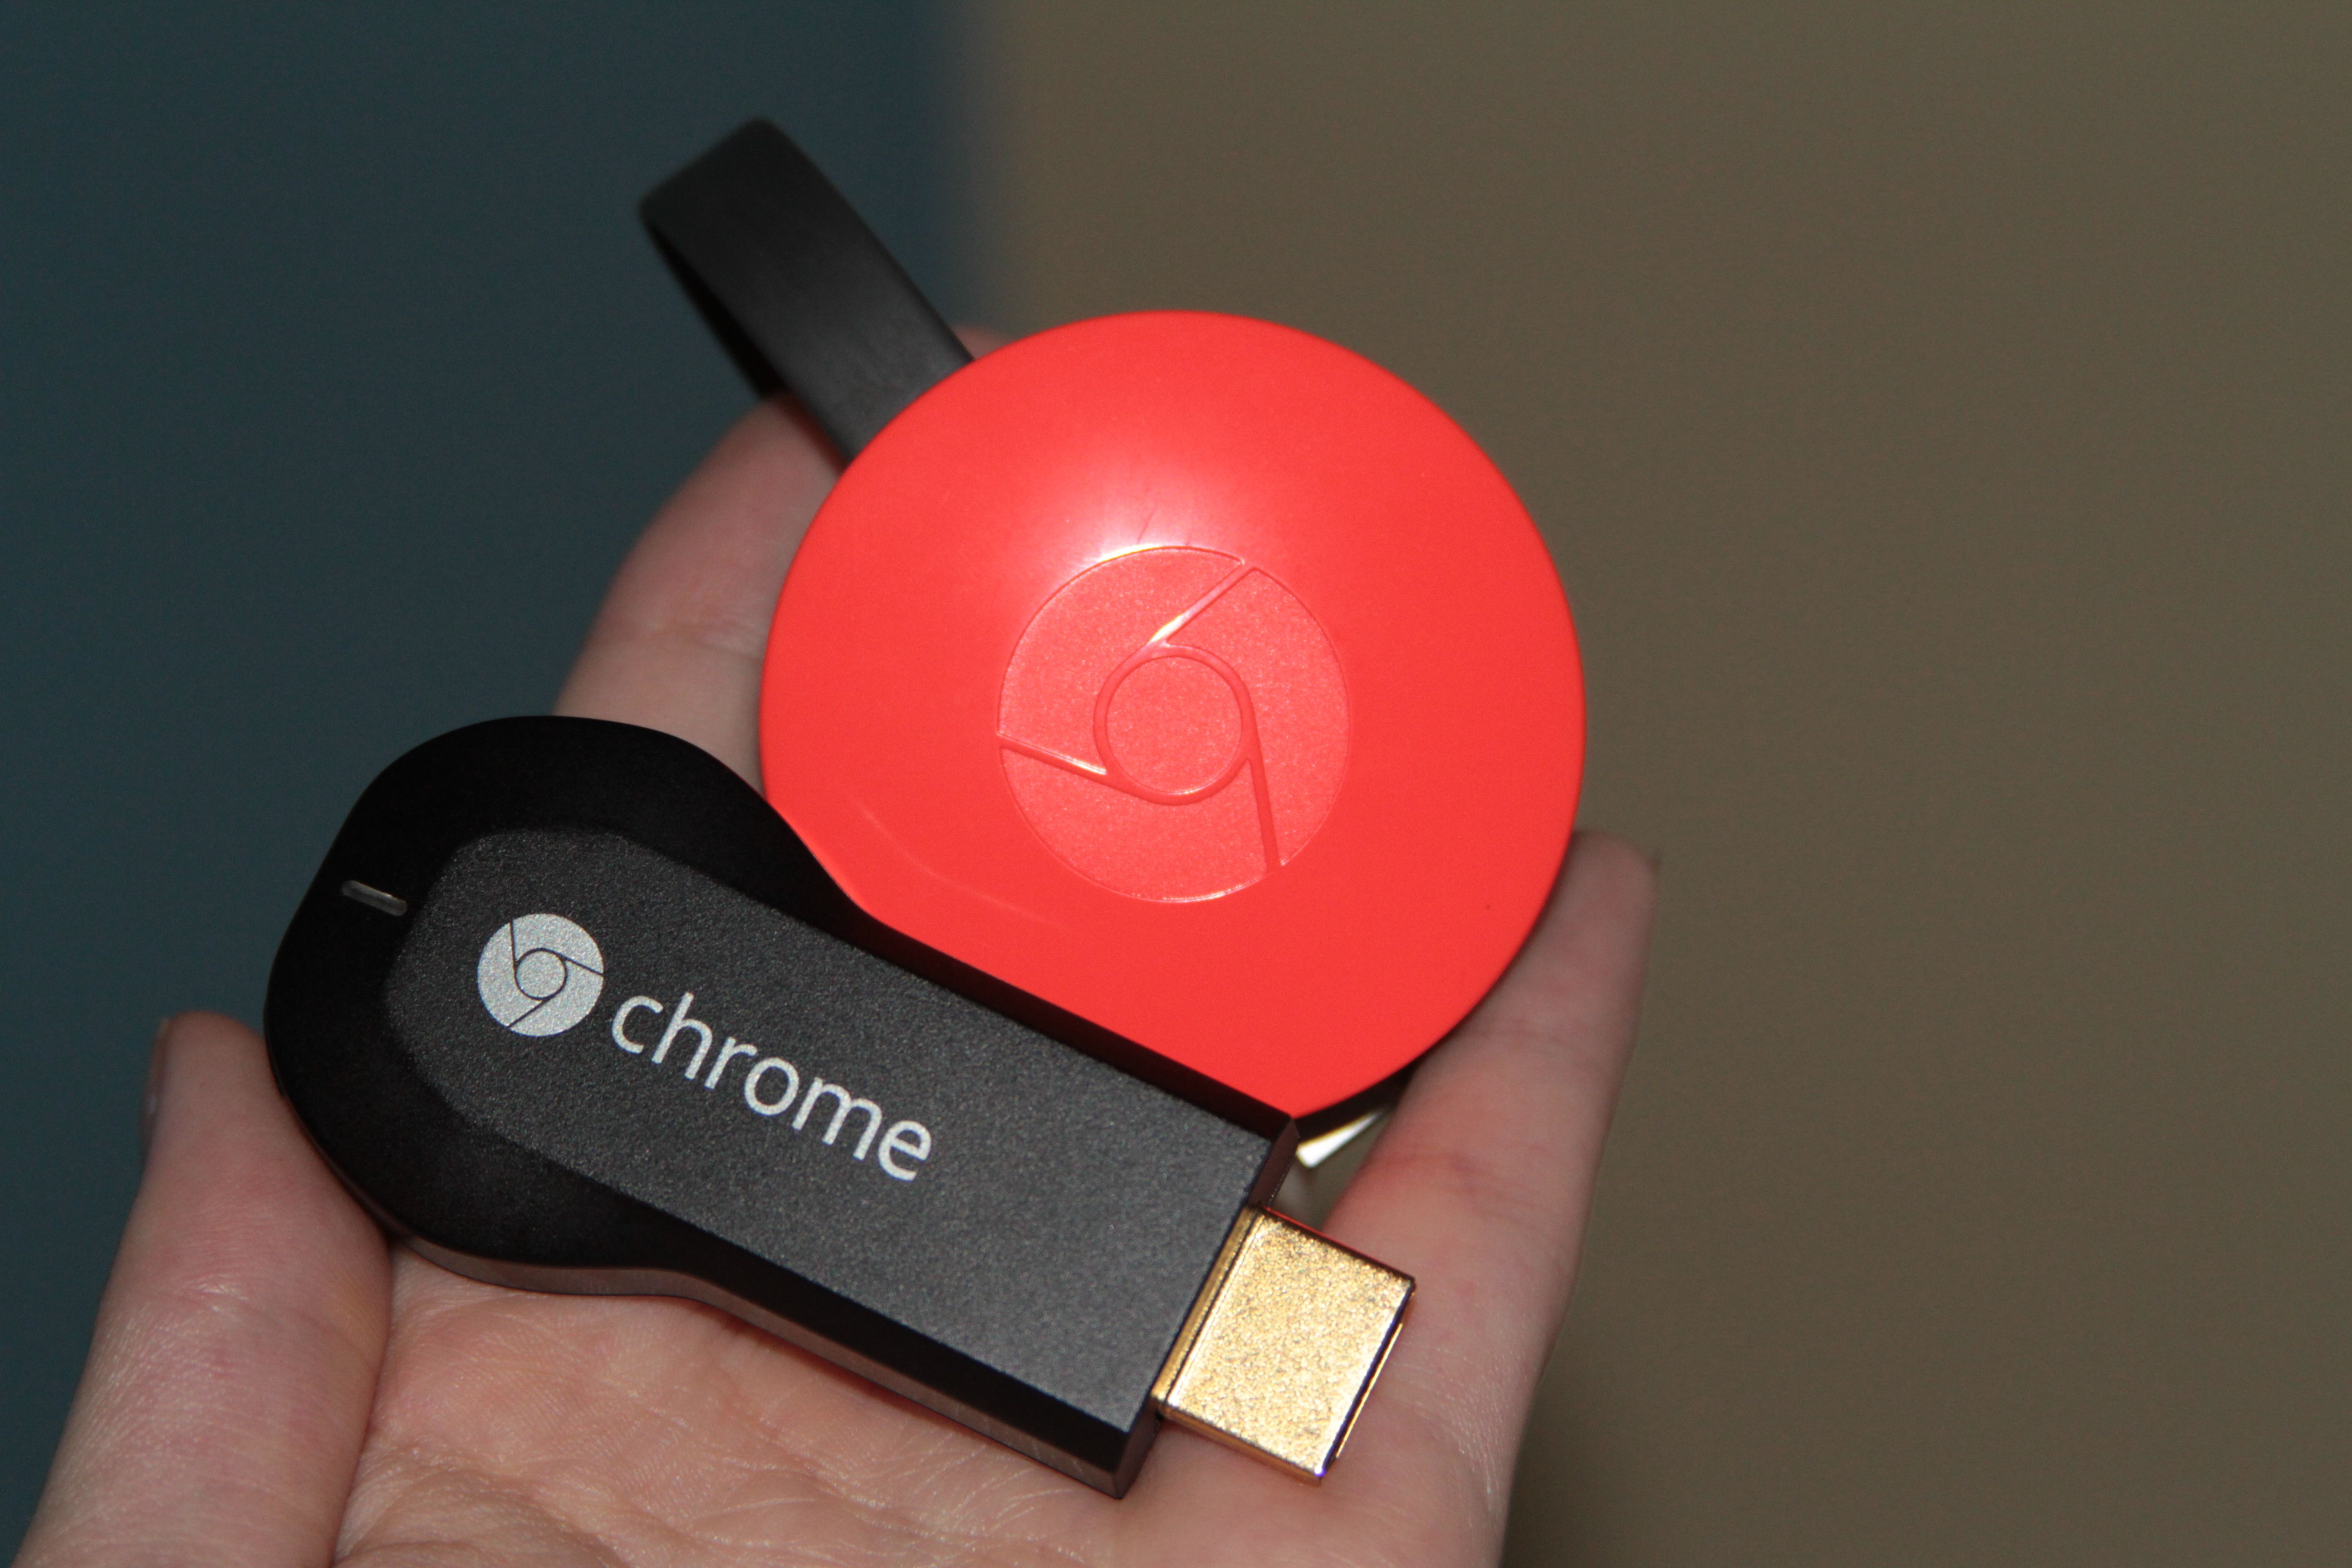 Google Chromecast: Cómo configurar Chromecast y empezar a usarlo